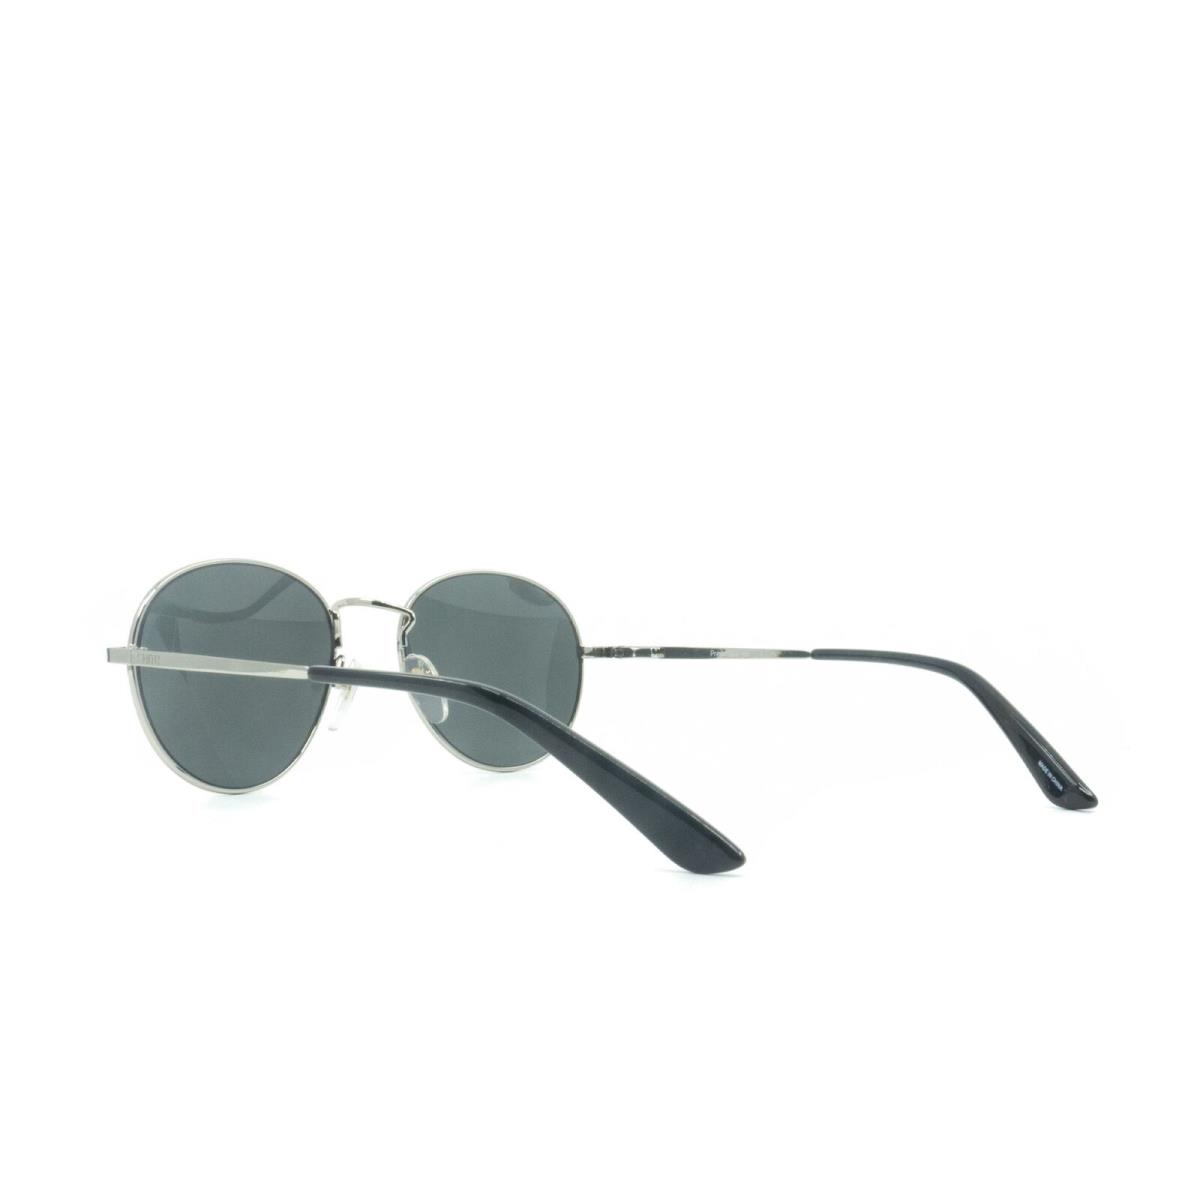 203240YB753IR Mens Smith Optics Prep Sunglasses - Frame: Silver